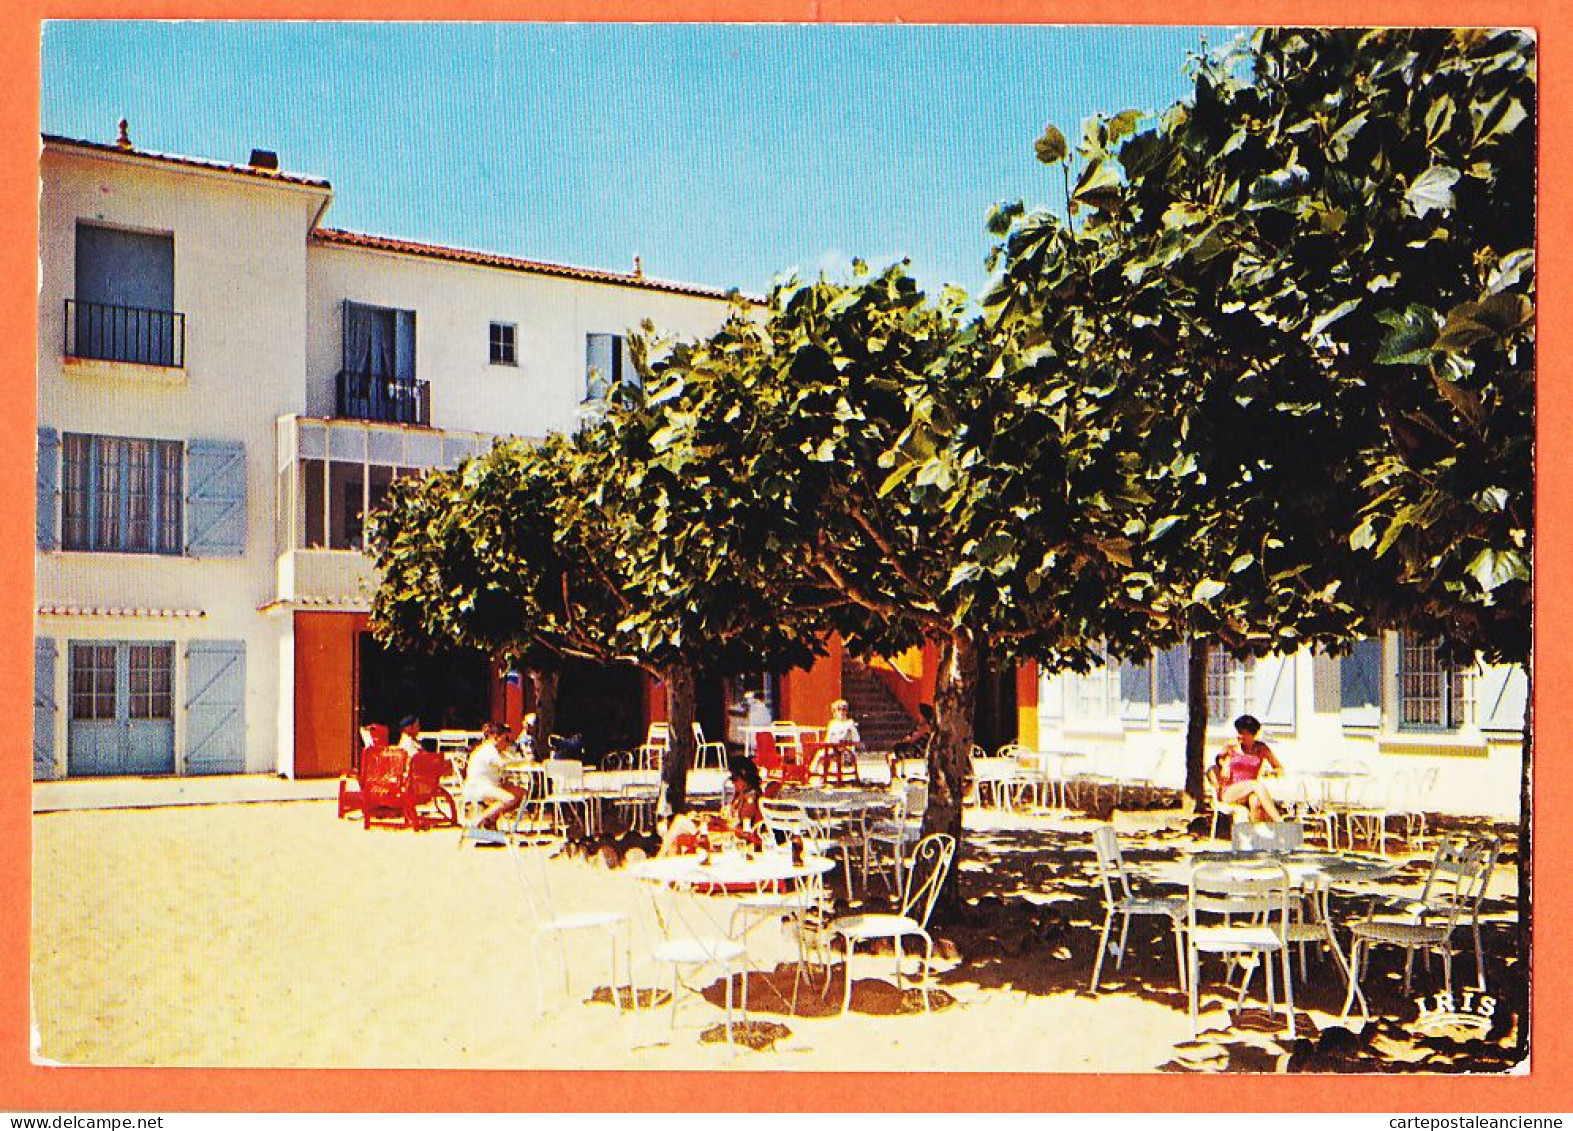 30595 / LA TRANCHE Sur MER 85-Vendée  Hotel-Restaurant LE REVE Terrasse Ombragée Cote Lumière De Fleurs 19650s CAP  - La Tranche Sur Mer